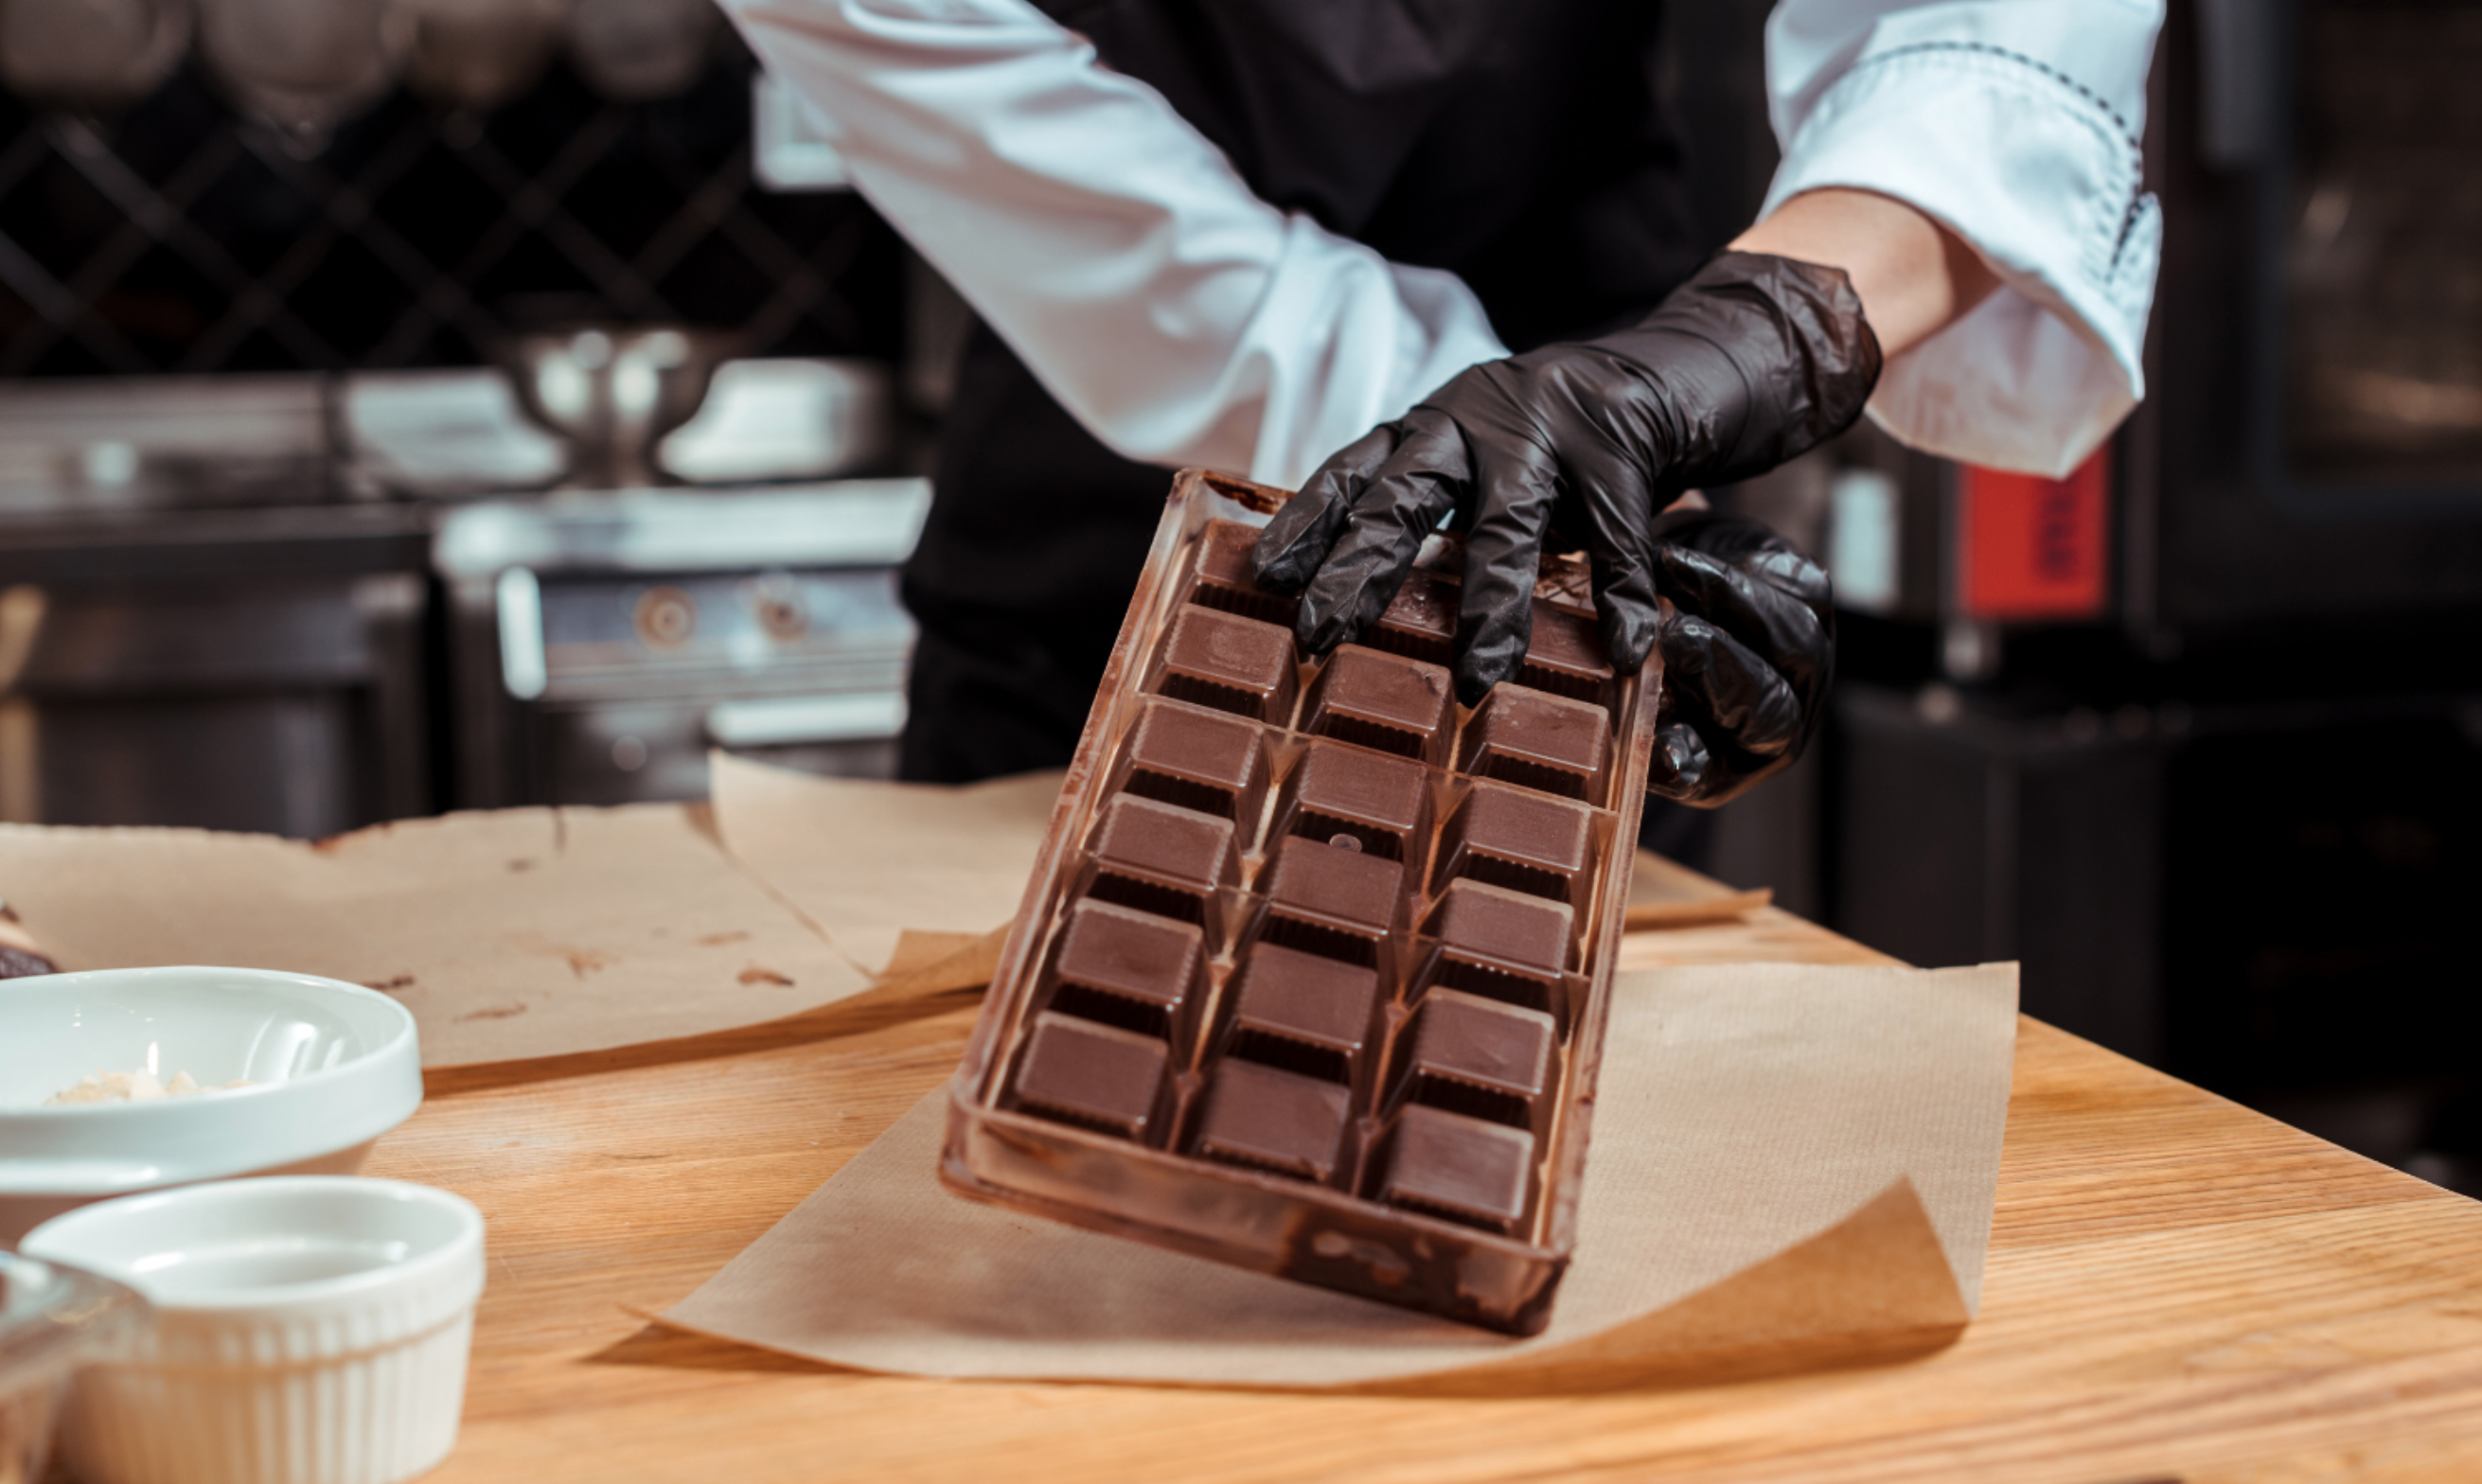 Praliné Maison Pistaches 60% : Chocolaterie Colombel - Artisan Chocolatier  : chocolatier, chocolat artisanal